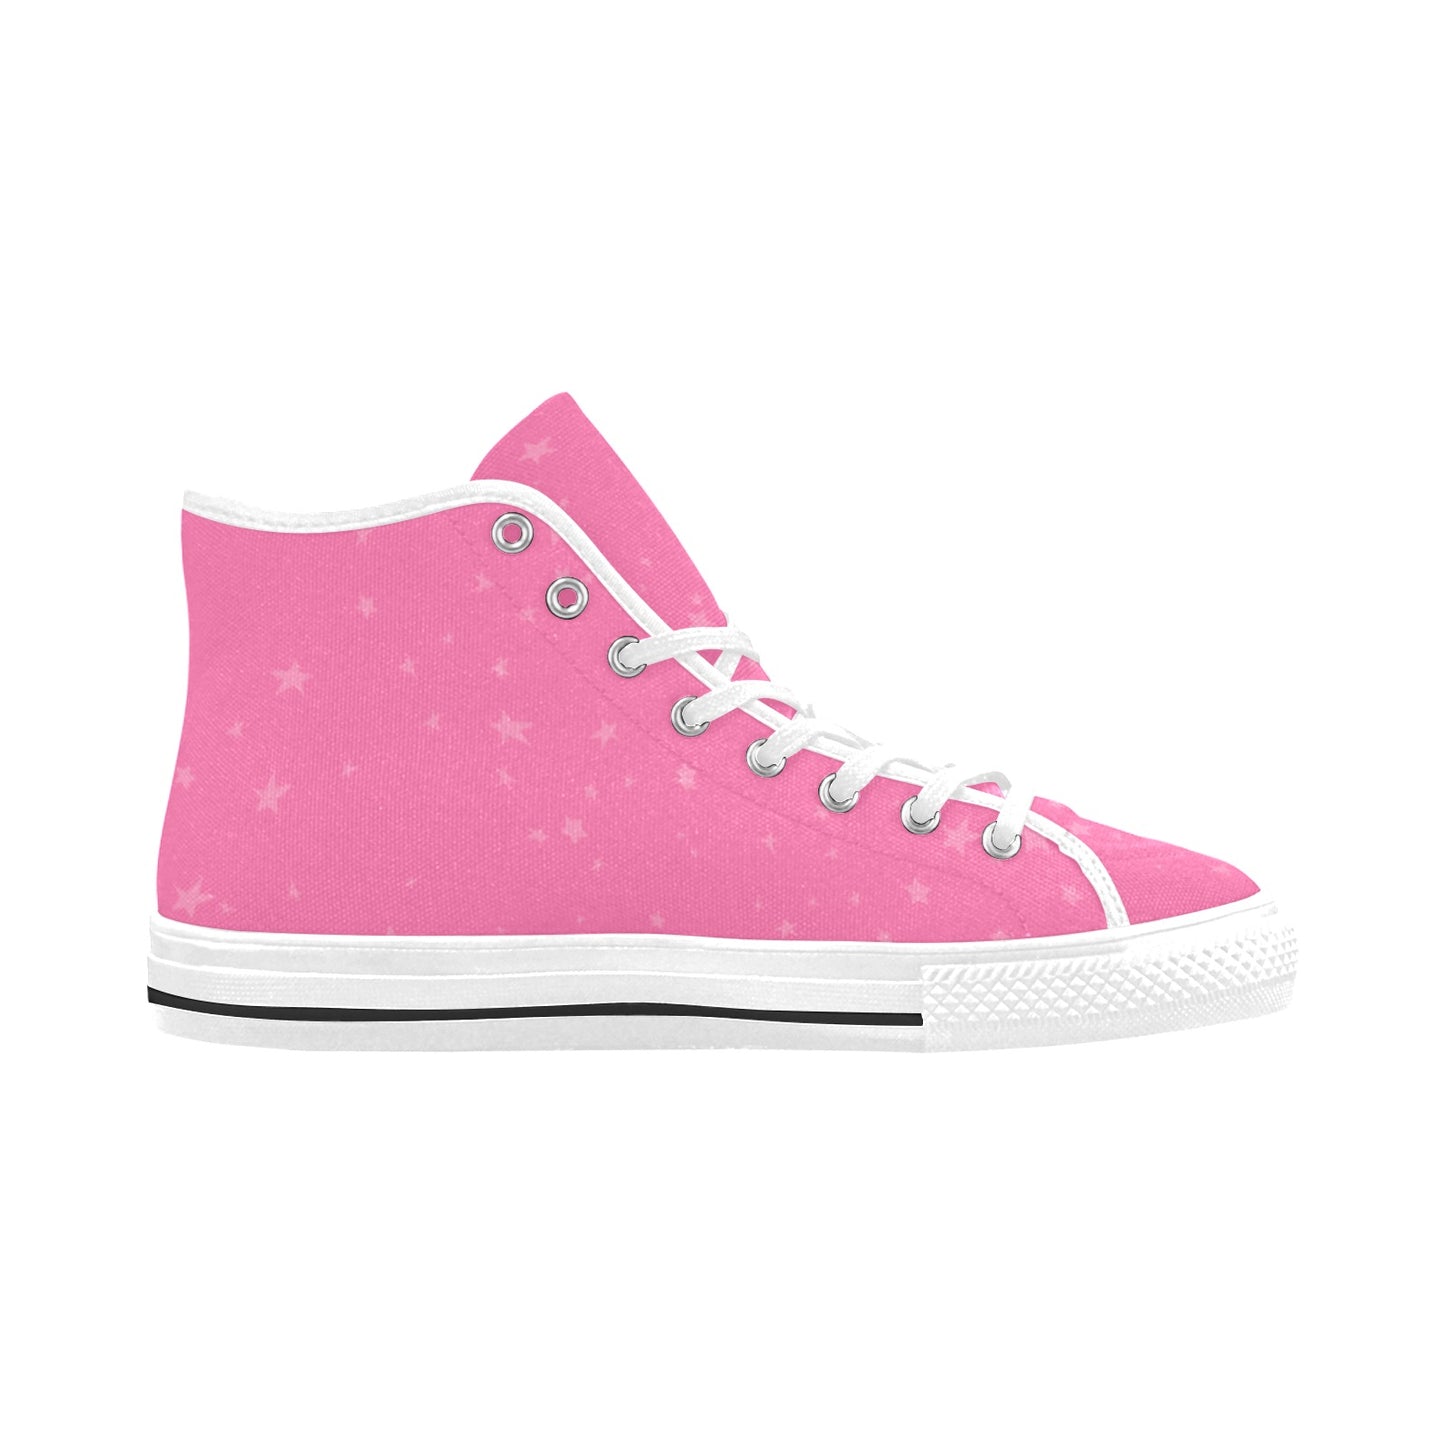 Women's Vancouver High Top Canvas Sneaker. "Pink Warrior"